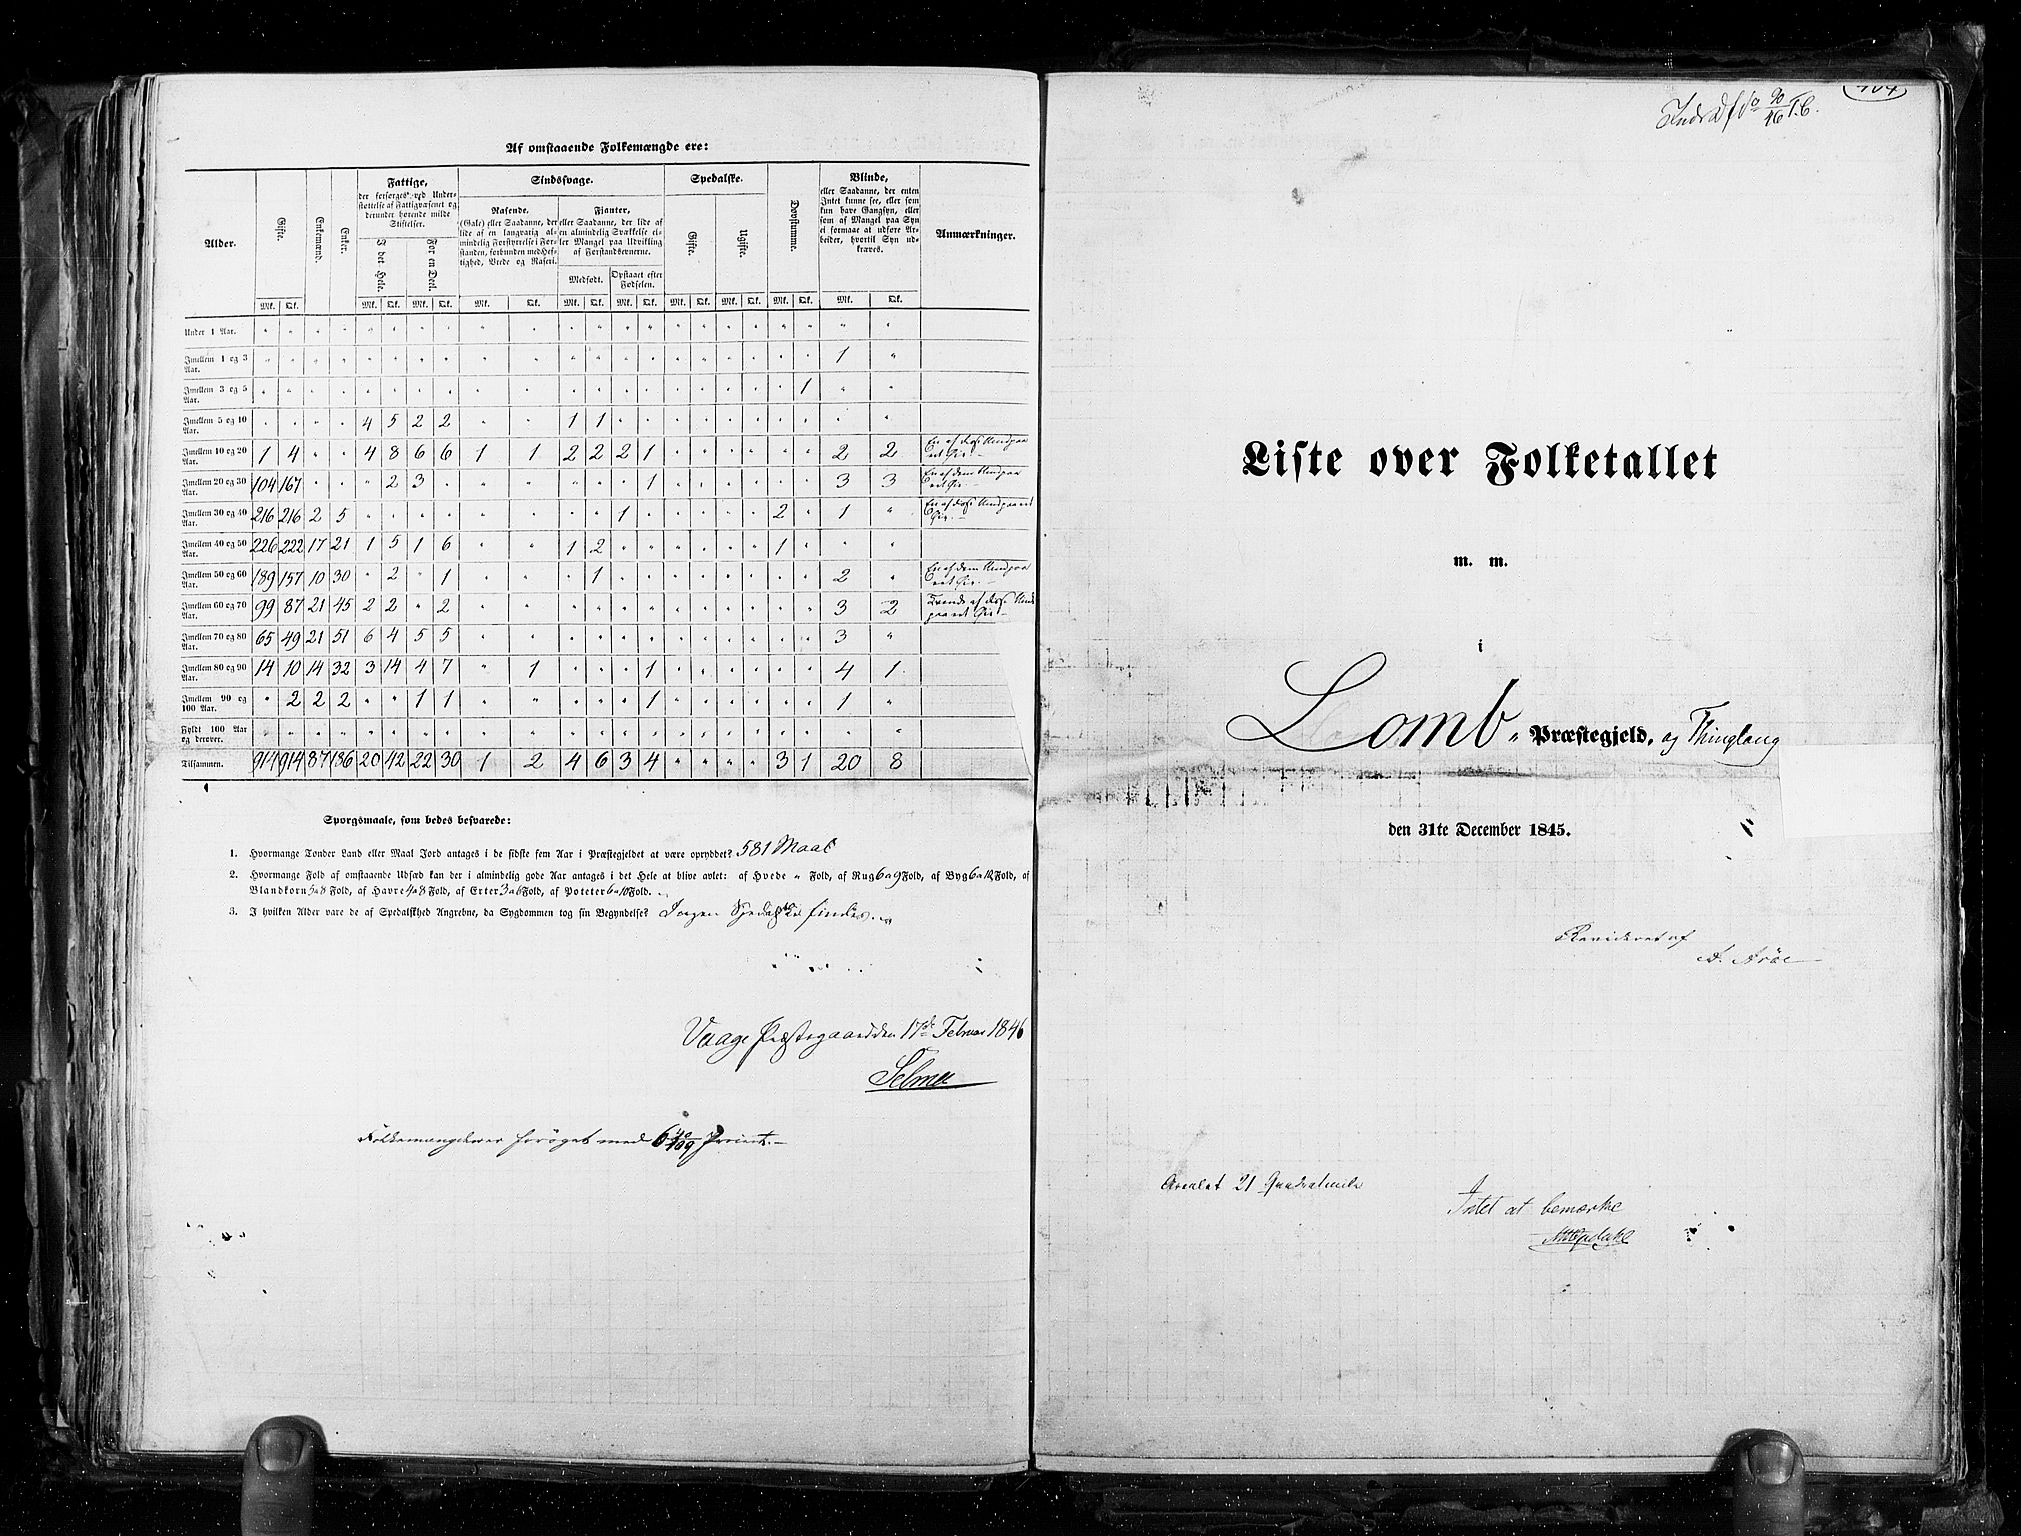 RA, Folketellingen 1845, bind 3: Hedemarken amt og Kristians amt, 1845, s. 404